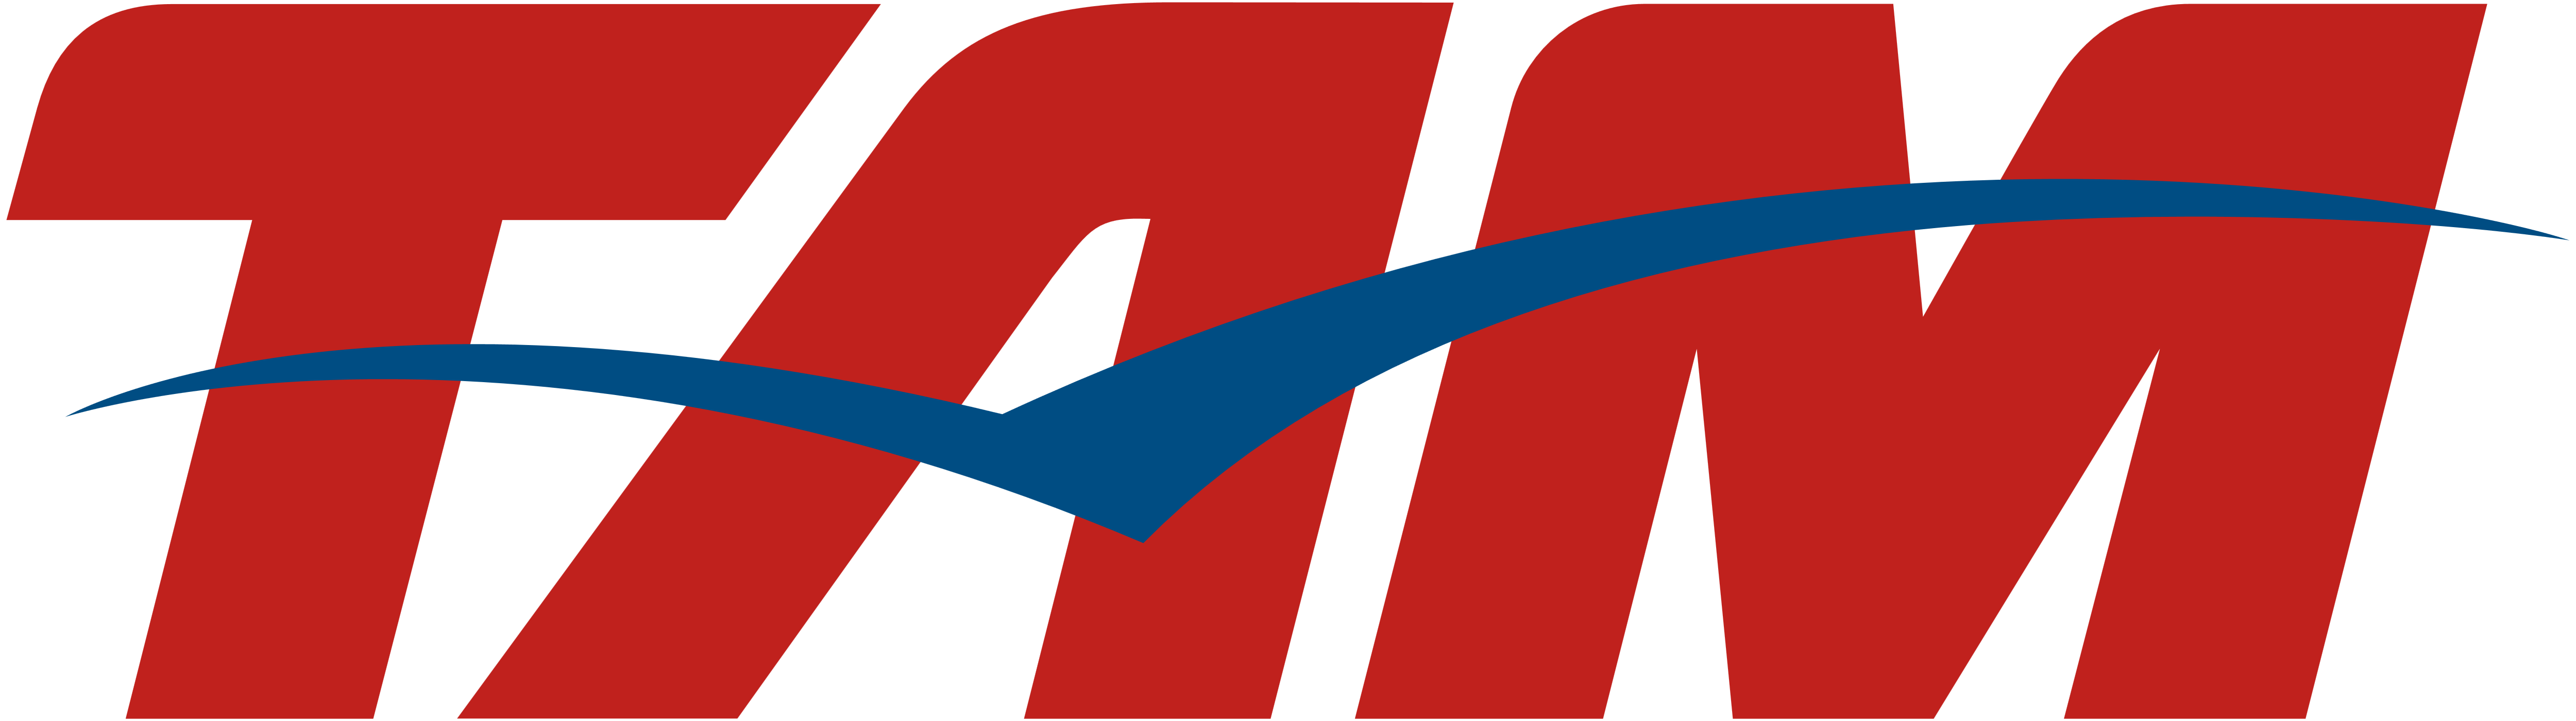 Lan Logo - LAN and TAM Airlines, TAM Linhas Aéreas – Logos Download